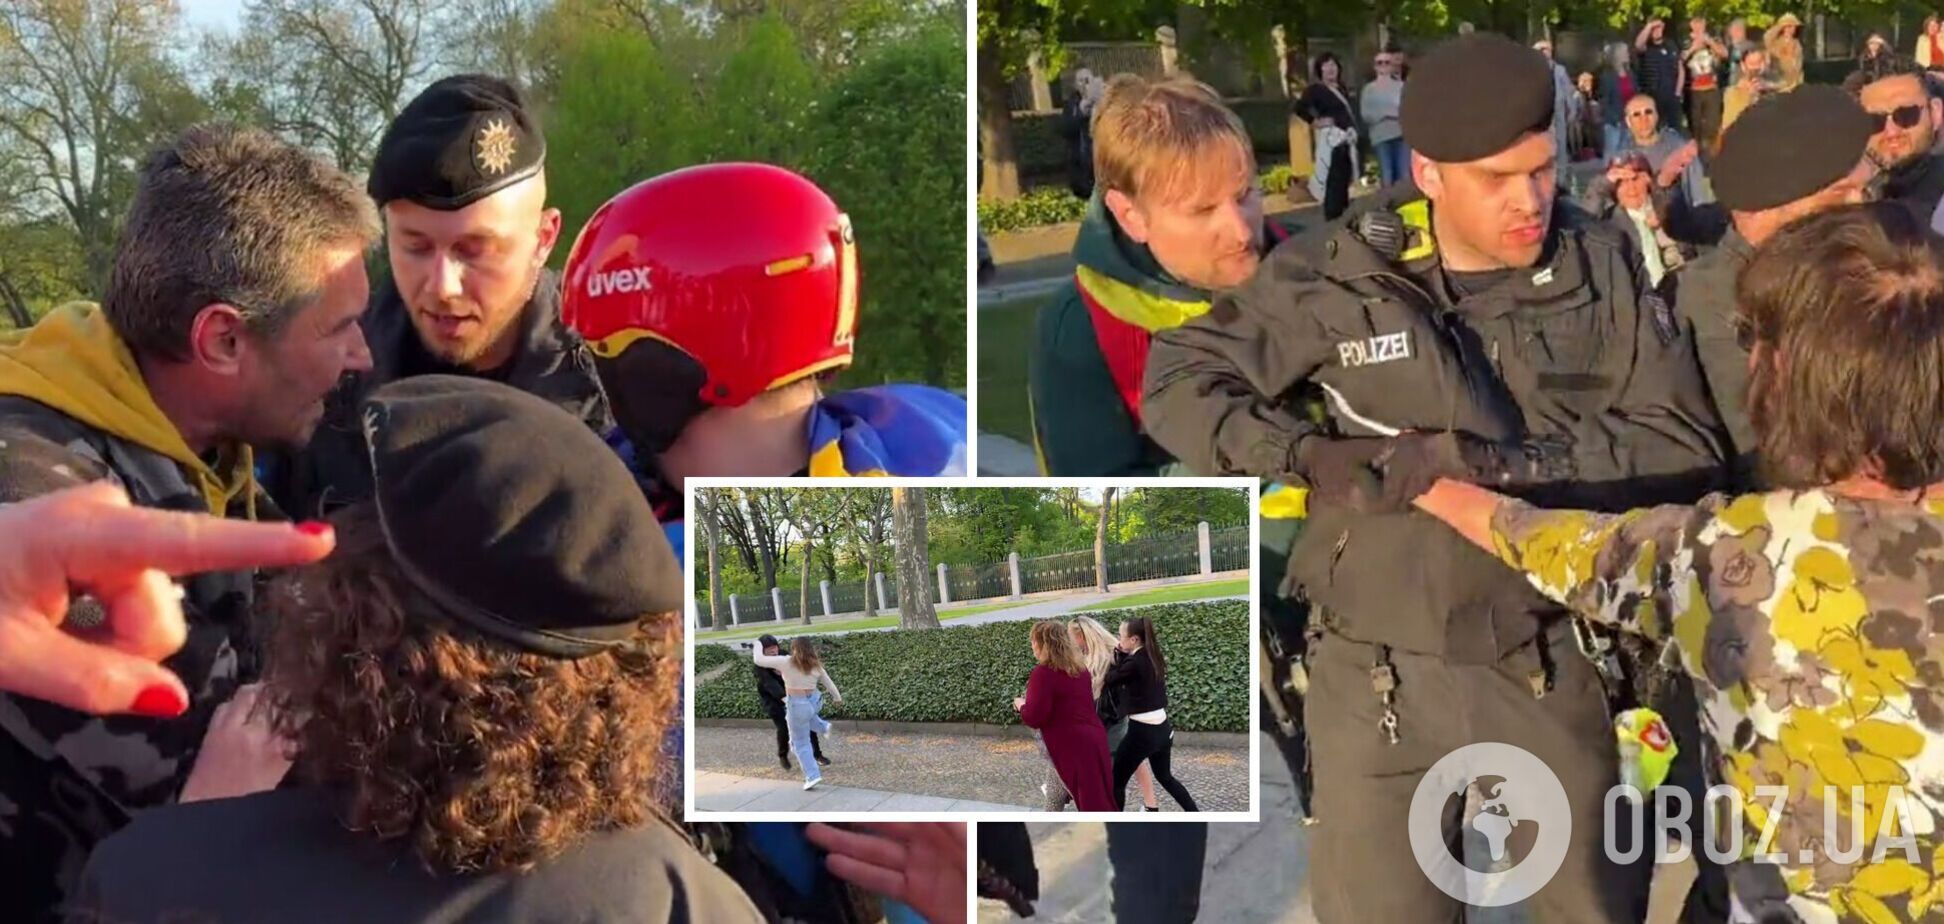 'Я поліції не боюсь': 9 травня в Берліні росіяни нападали на людей з українськими прапорами. Відео